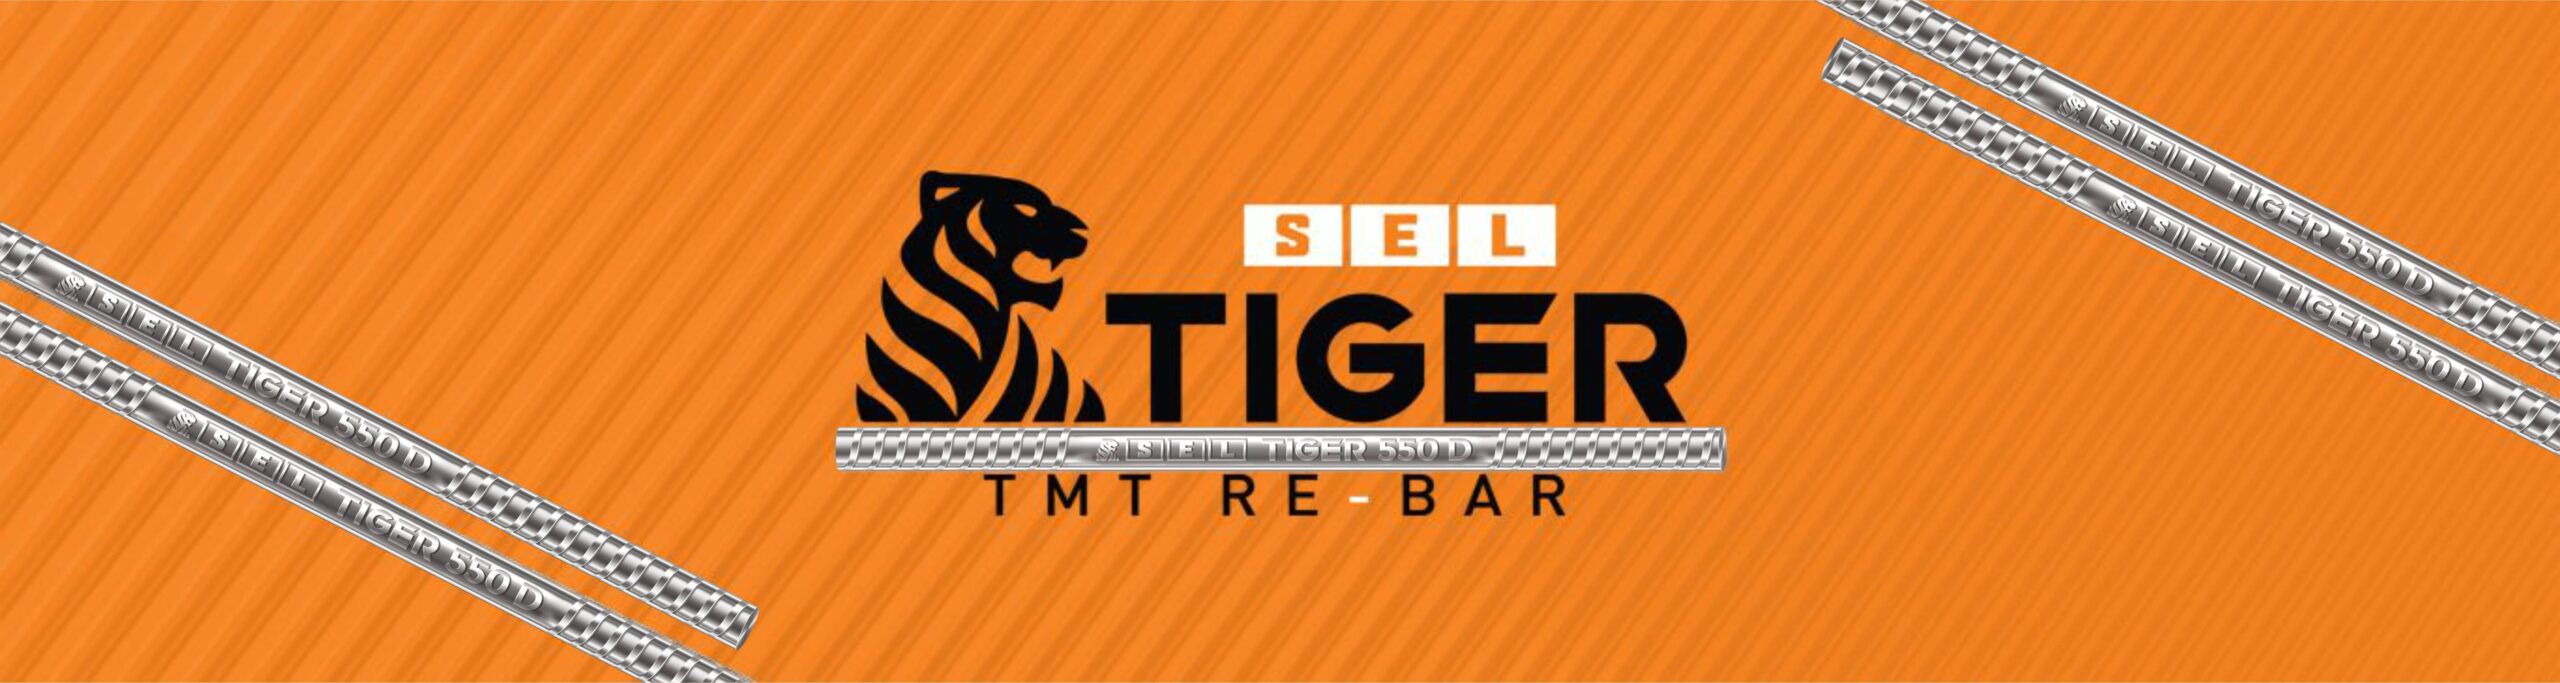 SEL Tger TMT Rebar banner